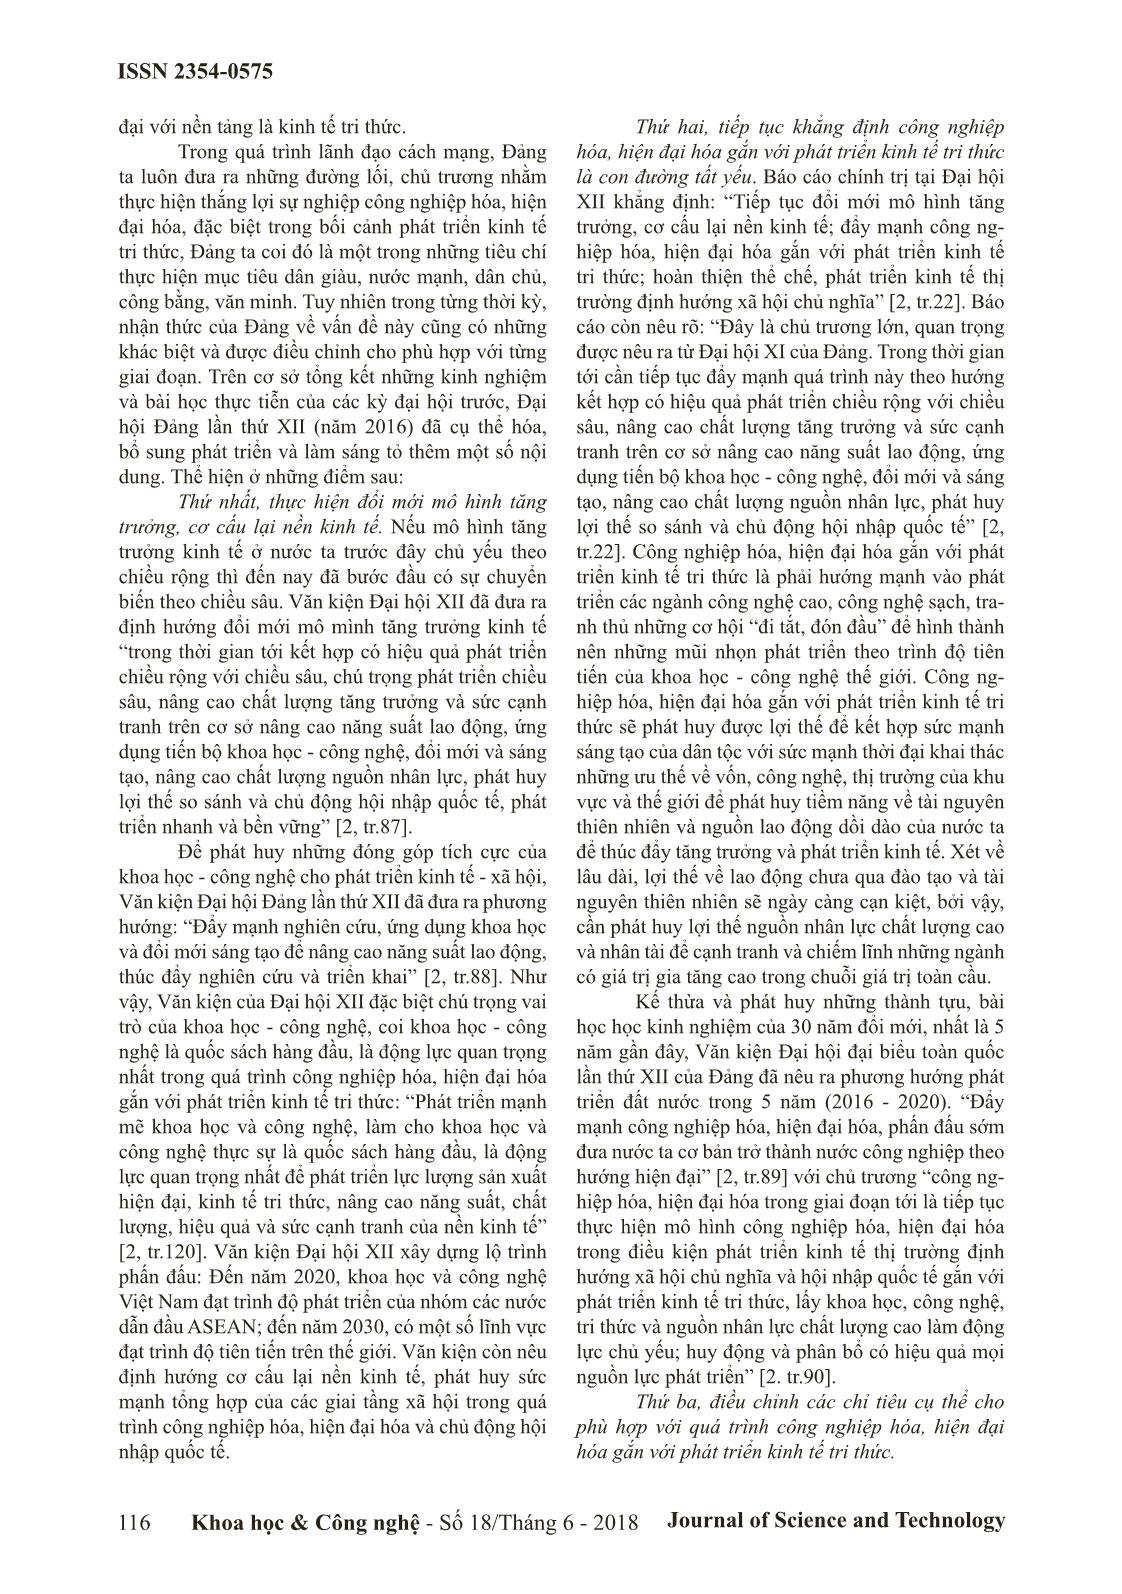 Đảng Cộng sản Việt Nam vận dụng tư tưởng Hồ Chí Minh về công nghiệp hóa trong bối cảnh cách mạng công nghệ 4.0 trang 4